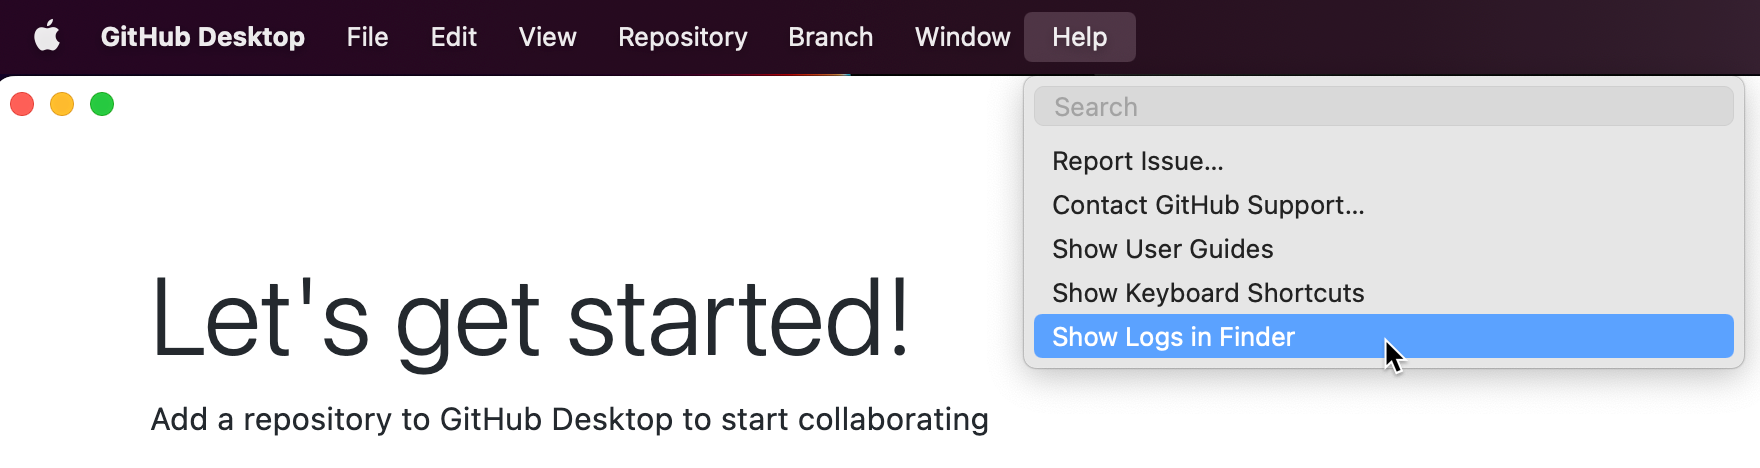 Captura de pantalla de la barra de menús "Escritorio de GitHub" en un equipo Mac. En el menú desplegable "Ayuda" expandido, un cursor mantiene el puntero sobre "Mostrar registros en Finder", resaltado en azul.